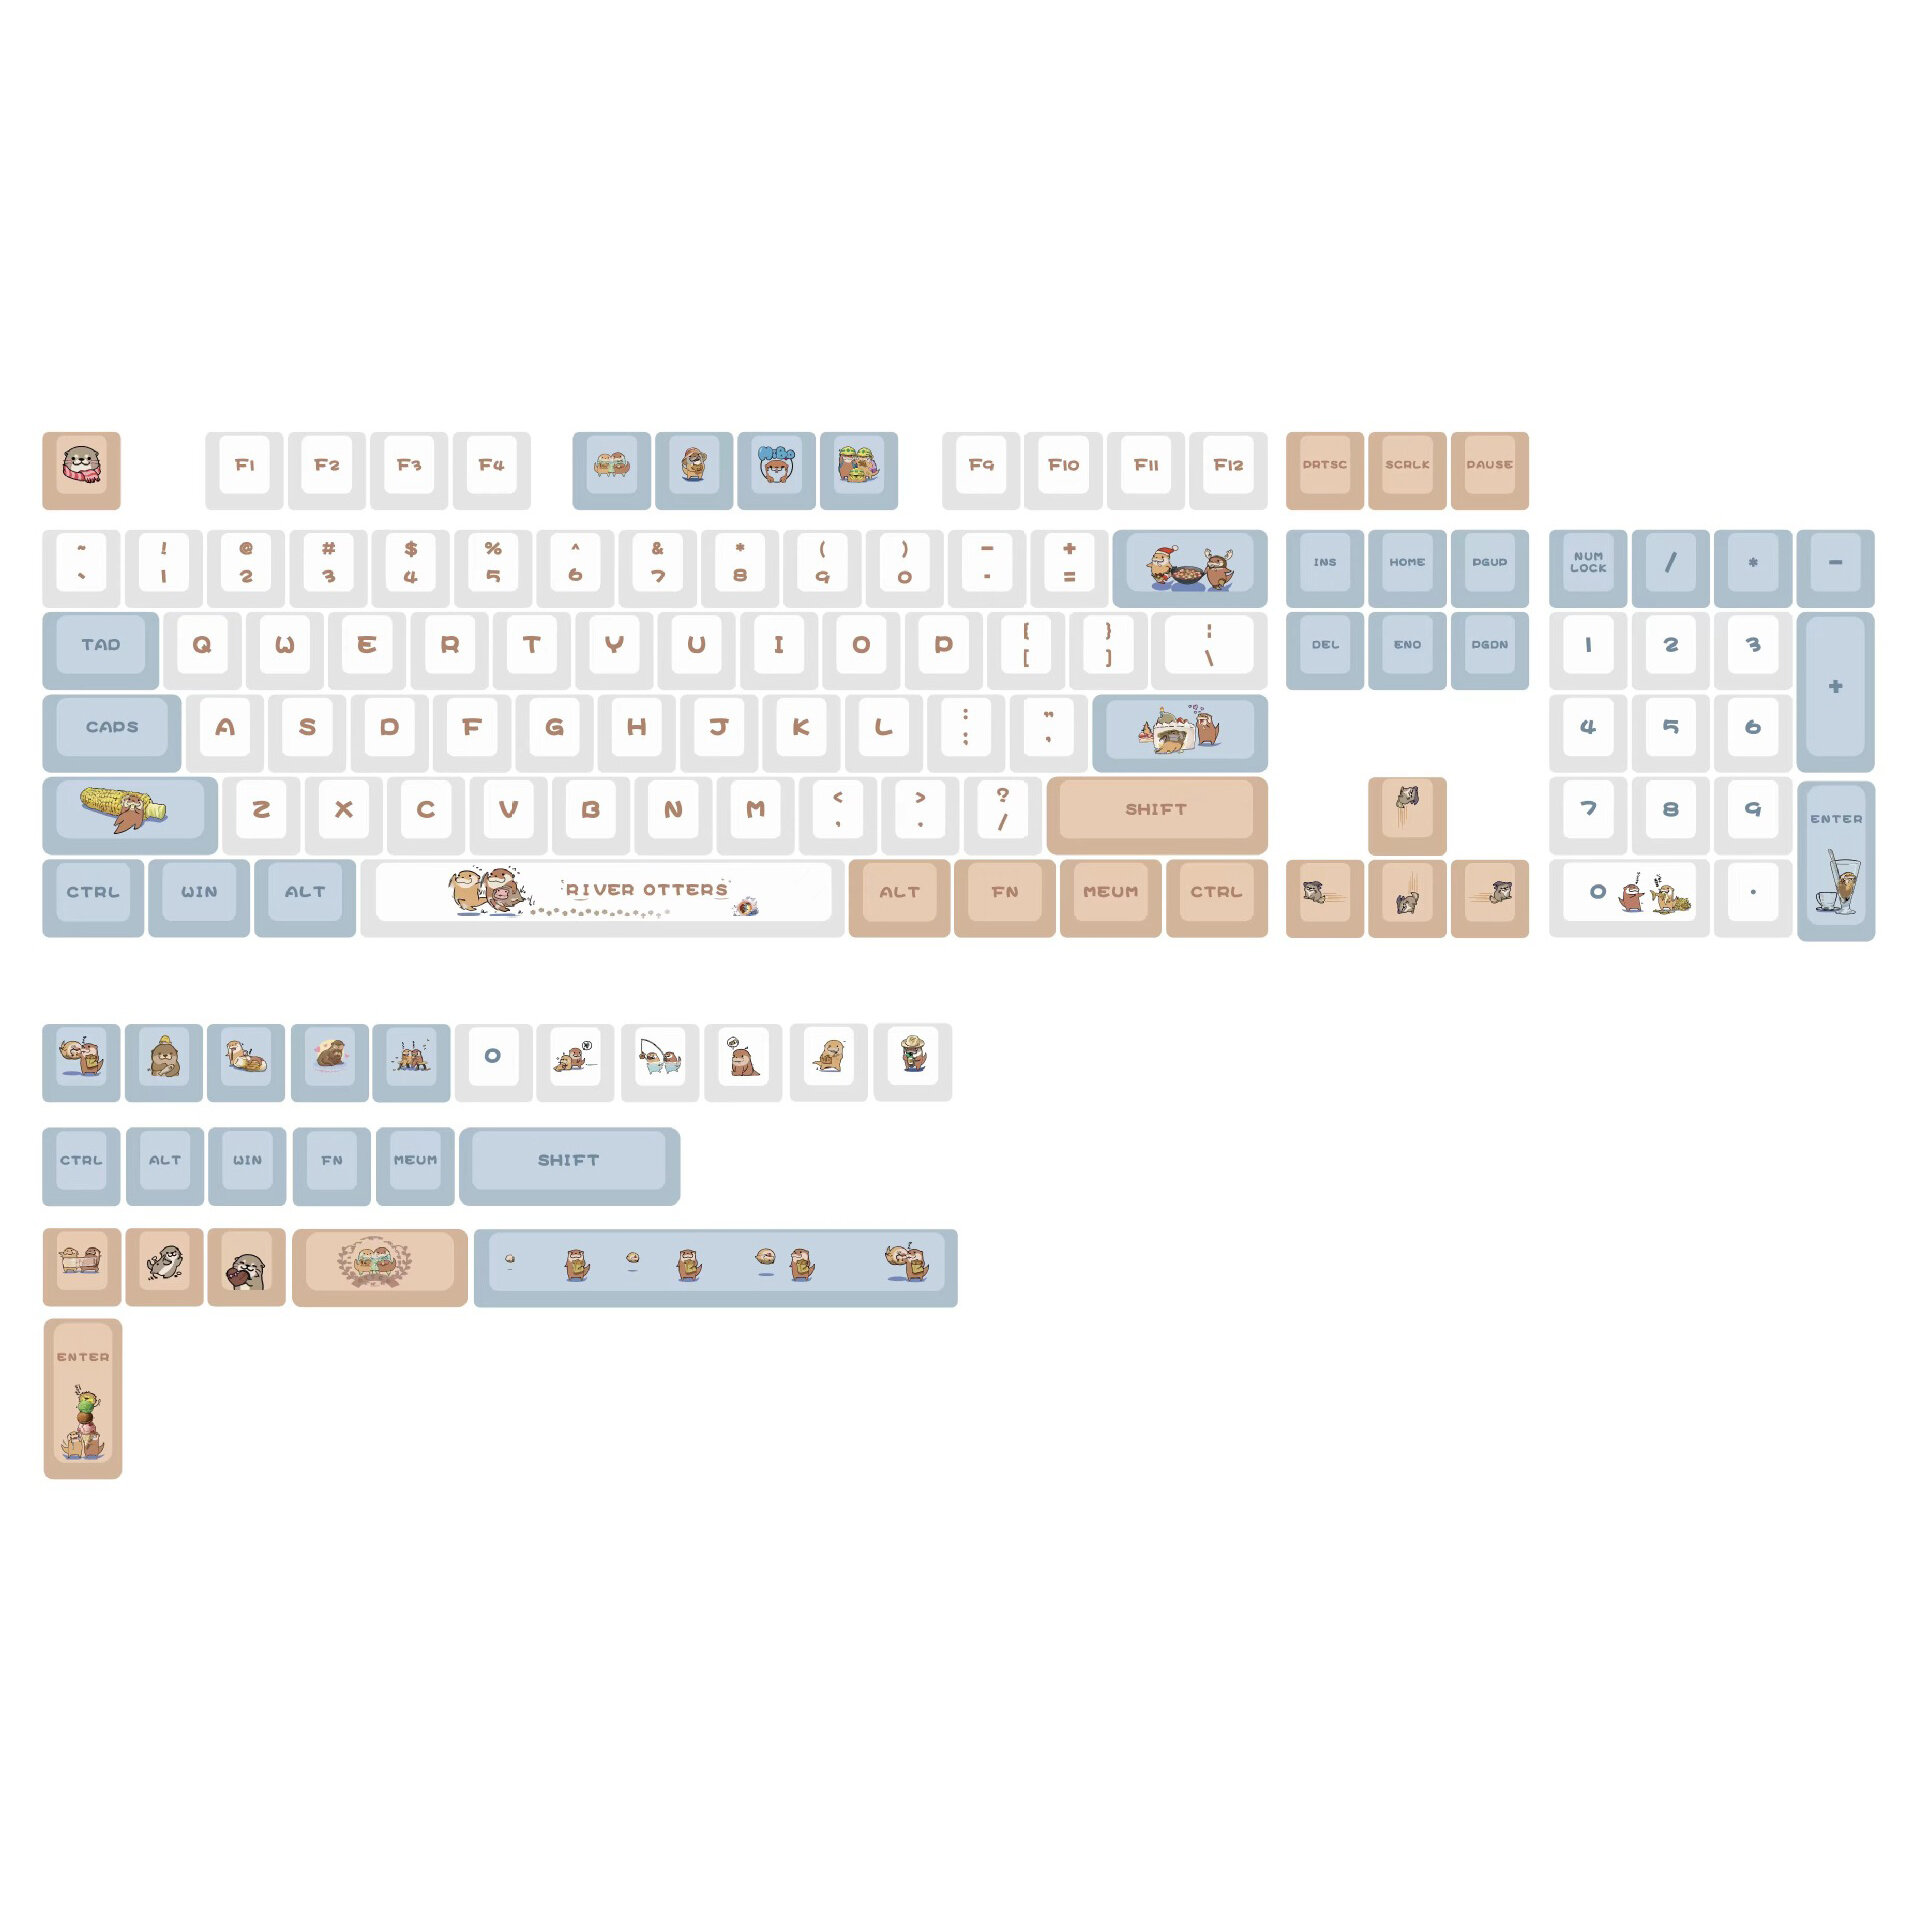 

Набор колпачков Otter PBT на 128 ключей XDA Profile Sublimation Keycaps для клавиатур Механический